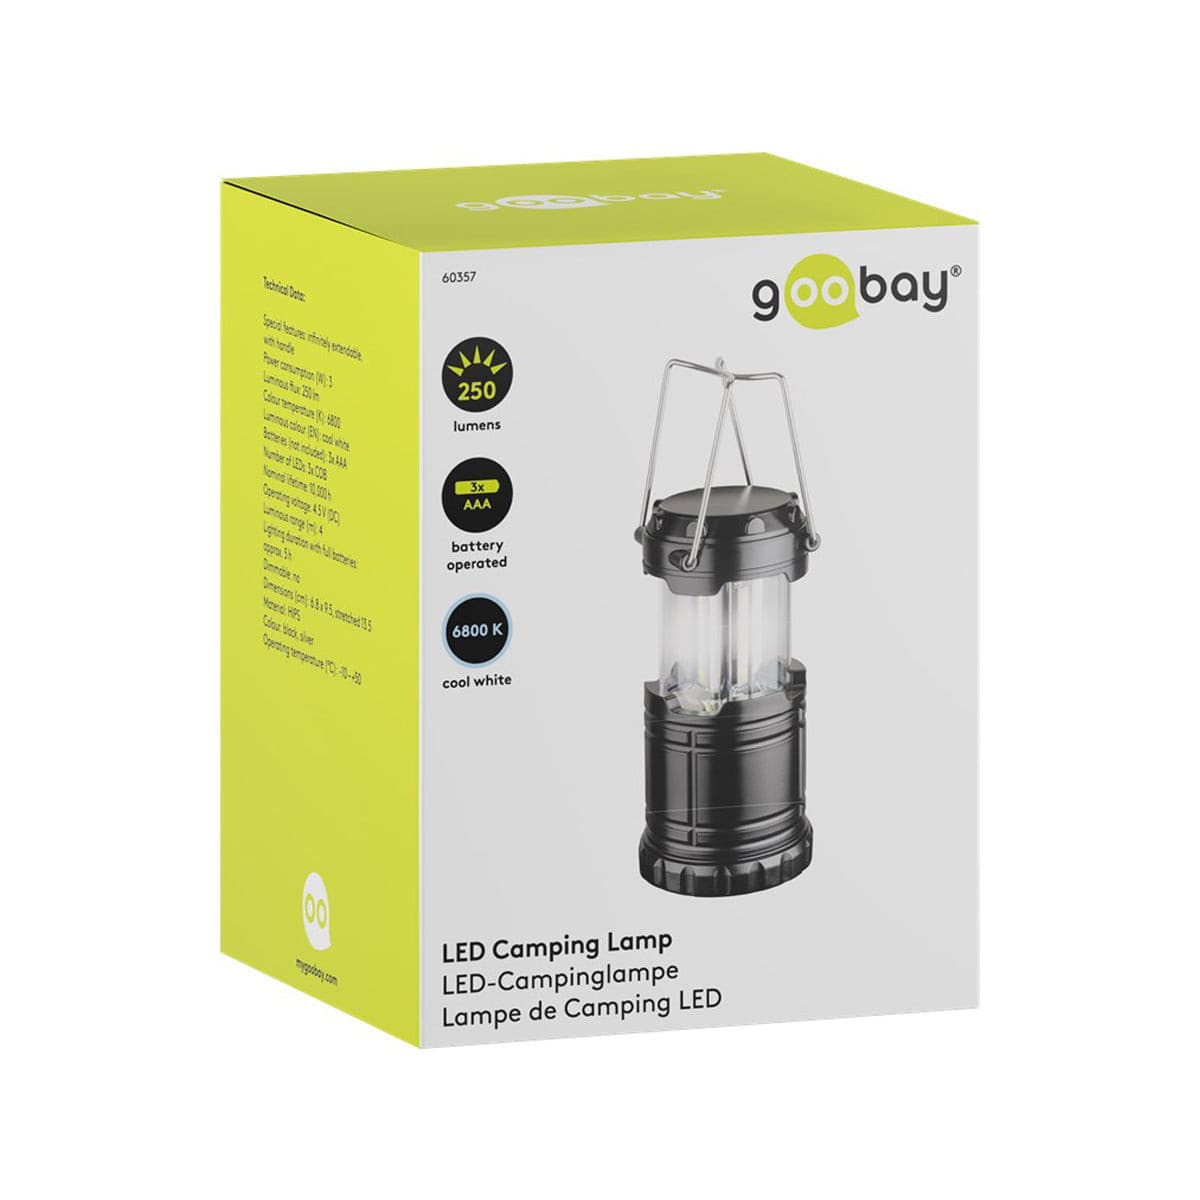 Goobay LED Camping Lamp - Black-Silver.